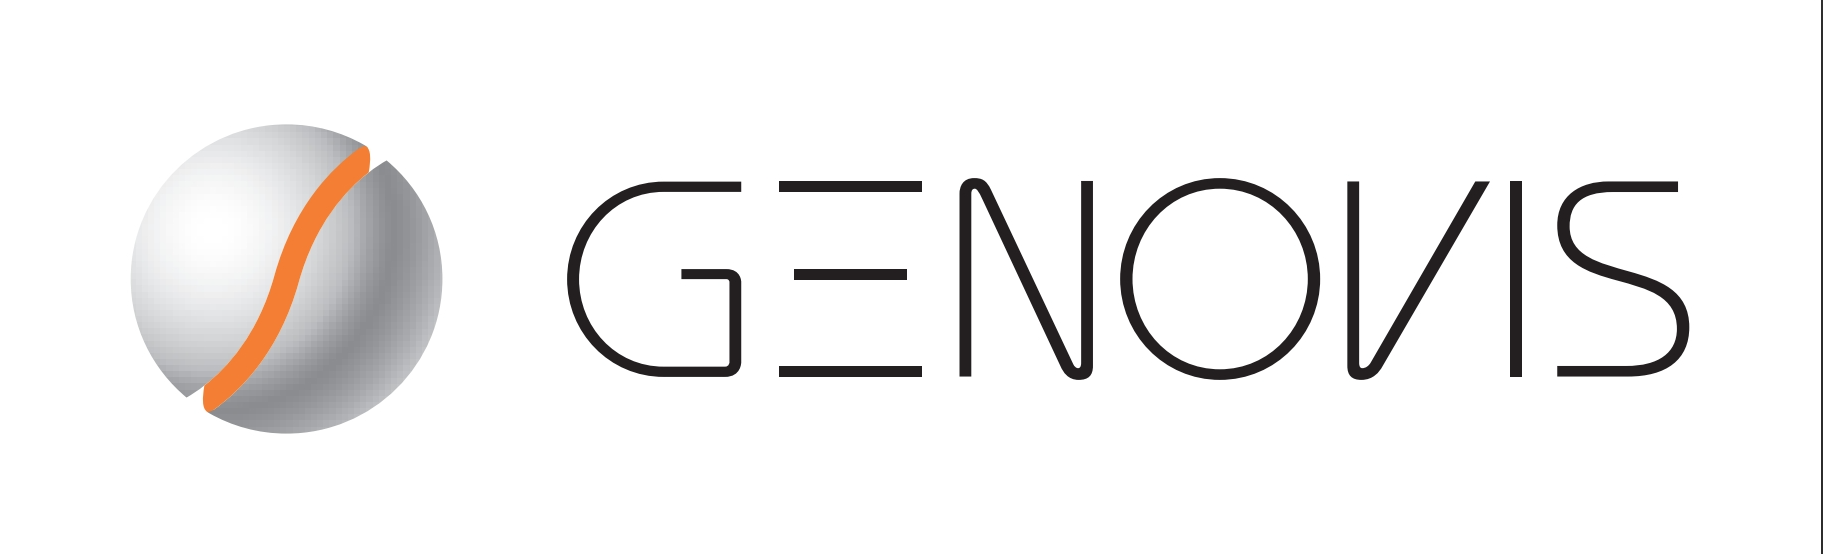 Genovis成立于1999年，总部位于瑞典。Genovis自成立以来致力于开发有助于生物药物的开发和质量控制的酶产品（SmartEnzymes），旨在提高复杂生物制药（例如抗体、Fc融合蛋白、复合糖蛋白和抗体偶联物）中分析或制备工作的功效的和通量。相较于传统的酶产品，Genovis的SmartEnzymes具有高特异性和选择性，适用于质量控制、稳定性测试、生产监测以及克隆选择等药物开发的多个环节